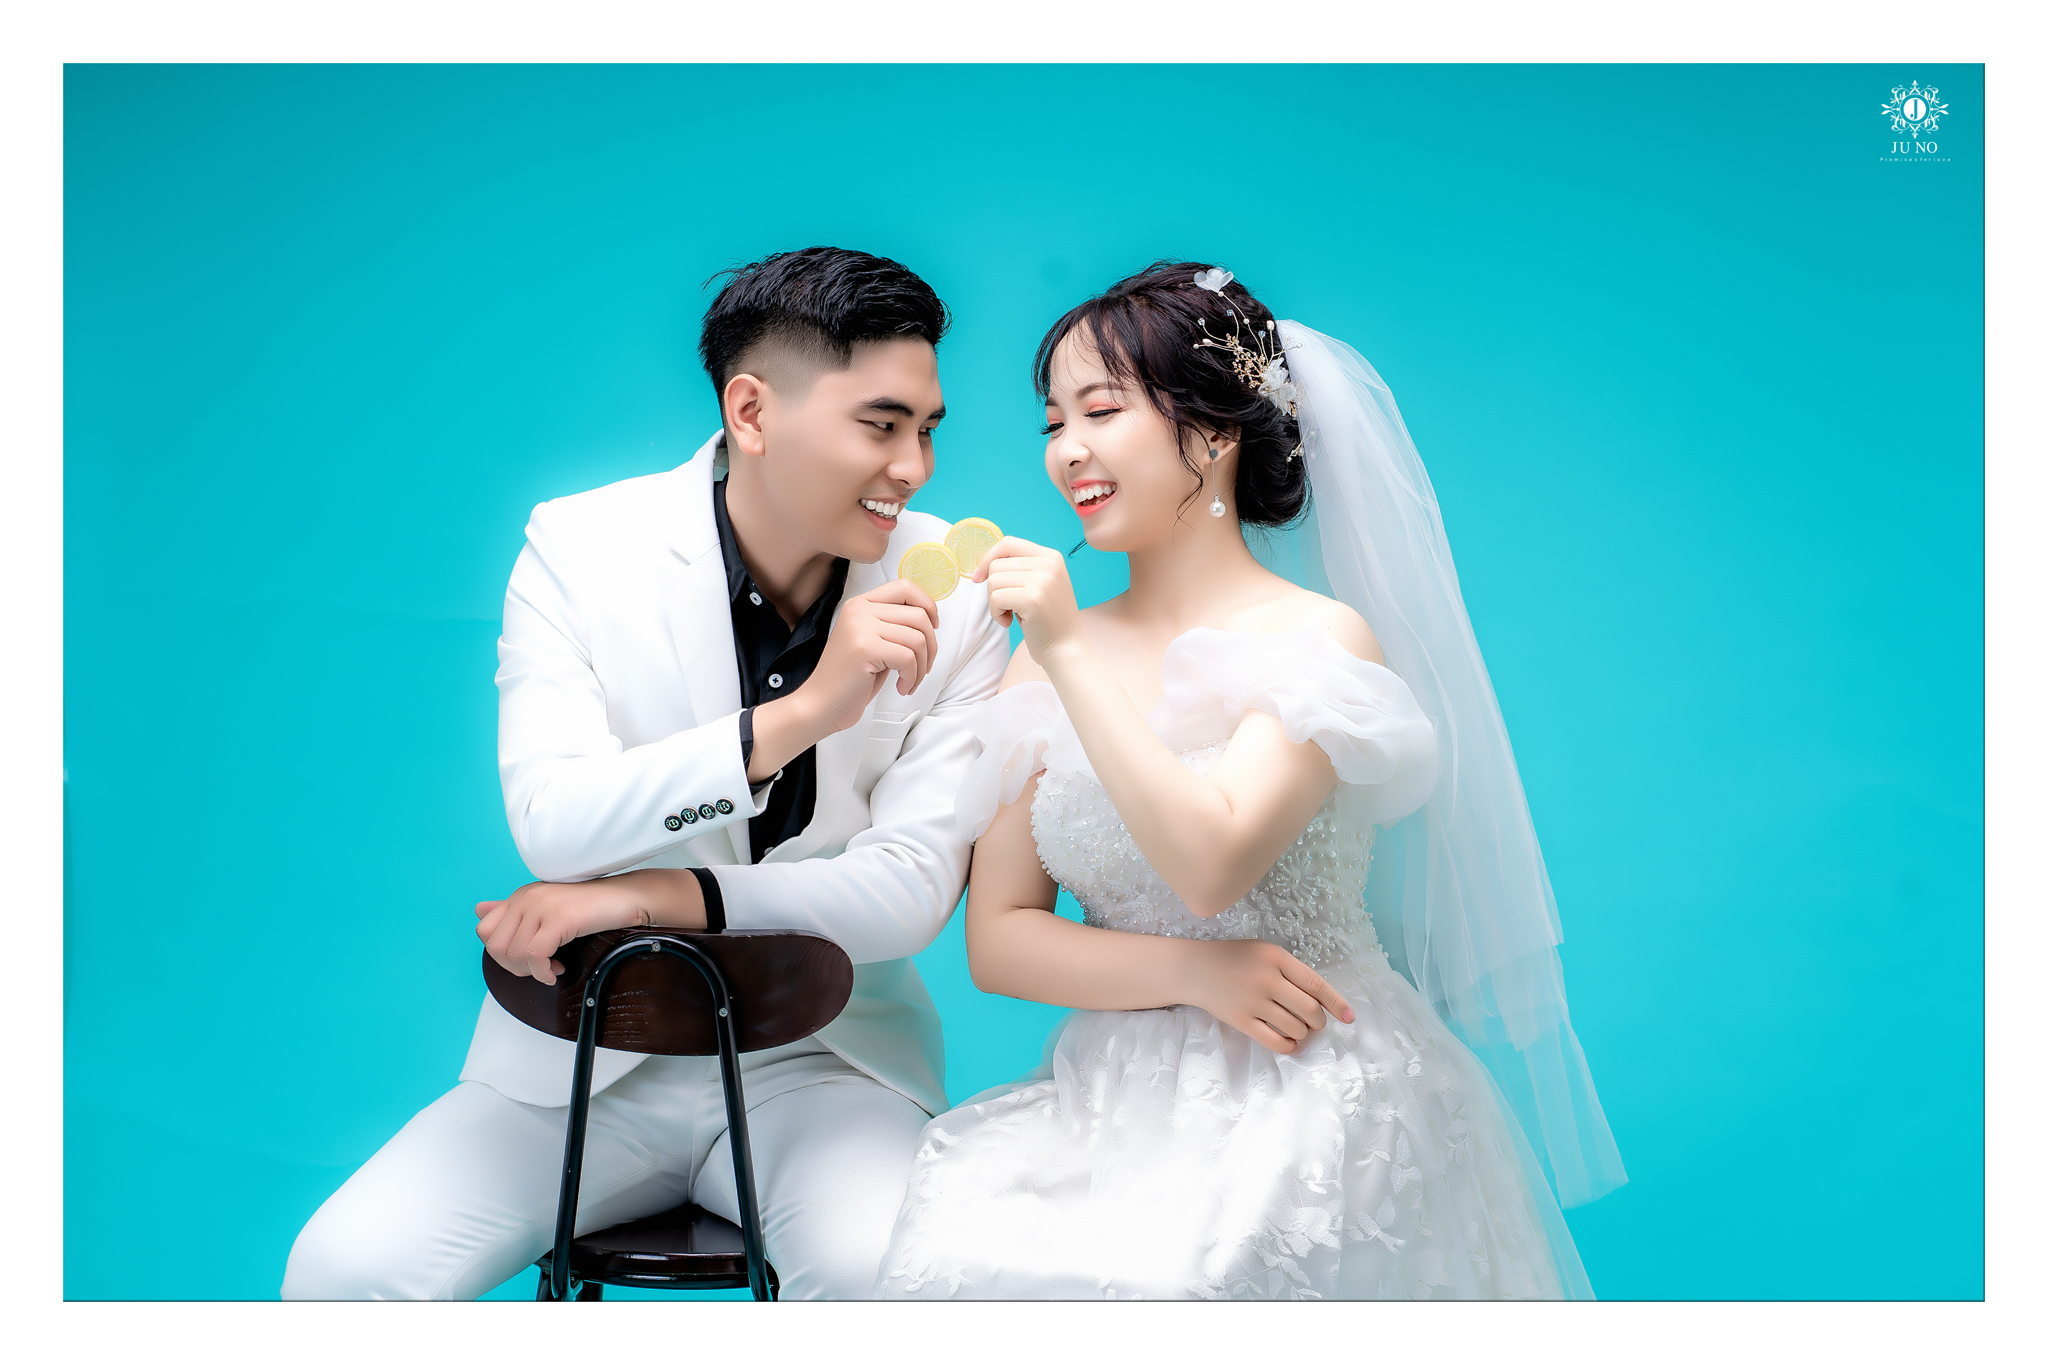 Juno Wedding: Bức ảnh của đám cưới Juno sẽ làm người xem lưu lại cảm giác ngọt ngào và ấm áp của tình yêu đôi lứa. Được chụp bởi những nhiếp ảnh gia tài ba ở Việt Nam, hình ảnh sẽ gửi gắm thông điệp về tình yêu và hạnh phúc trọn vẹn.